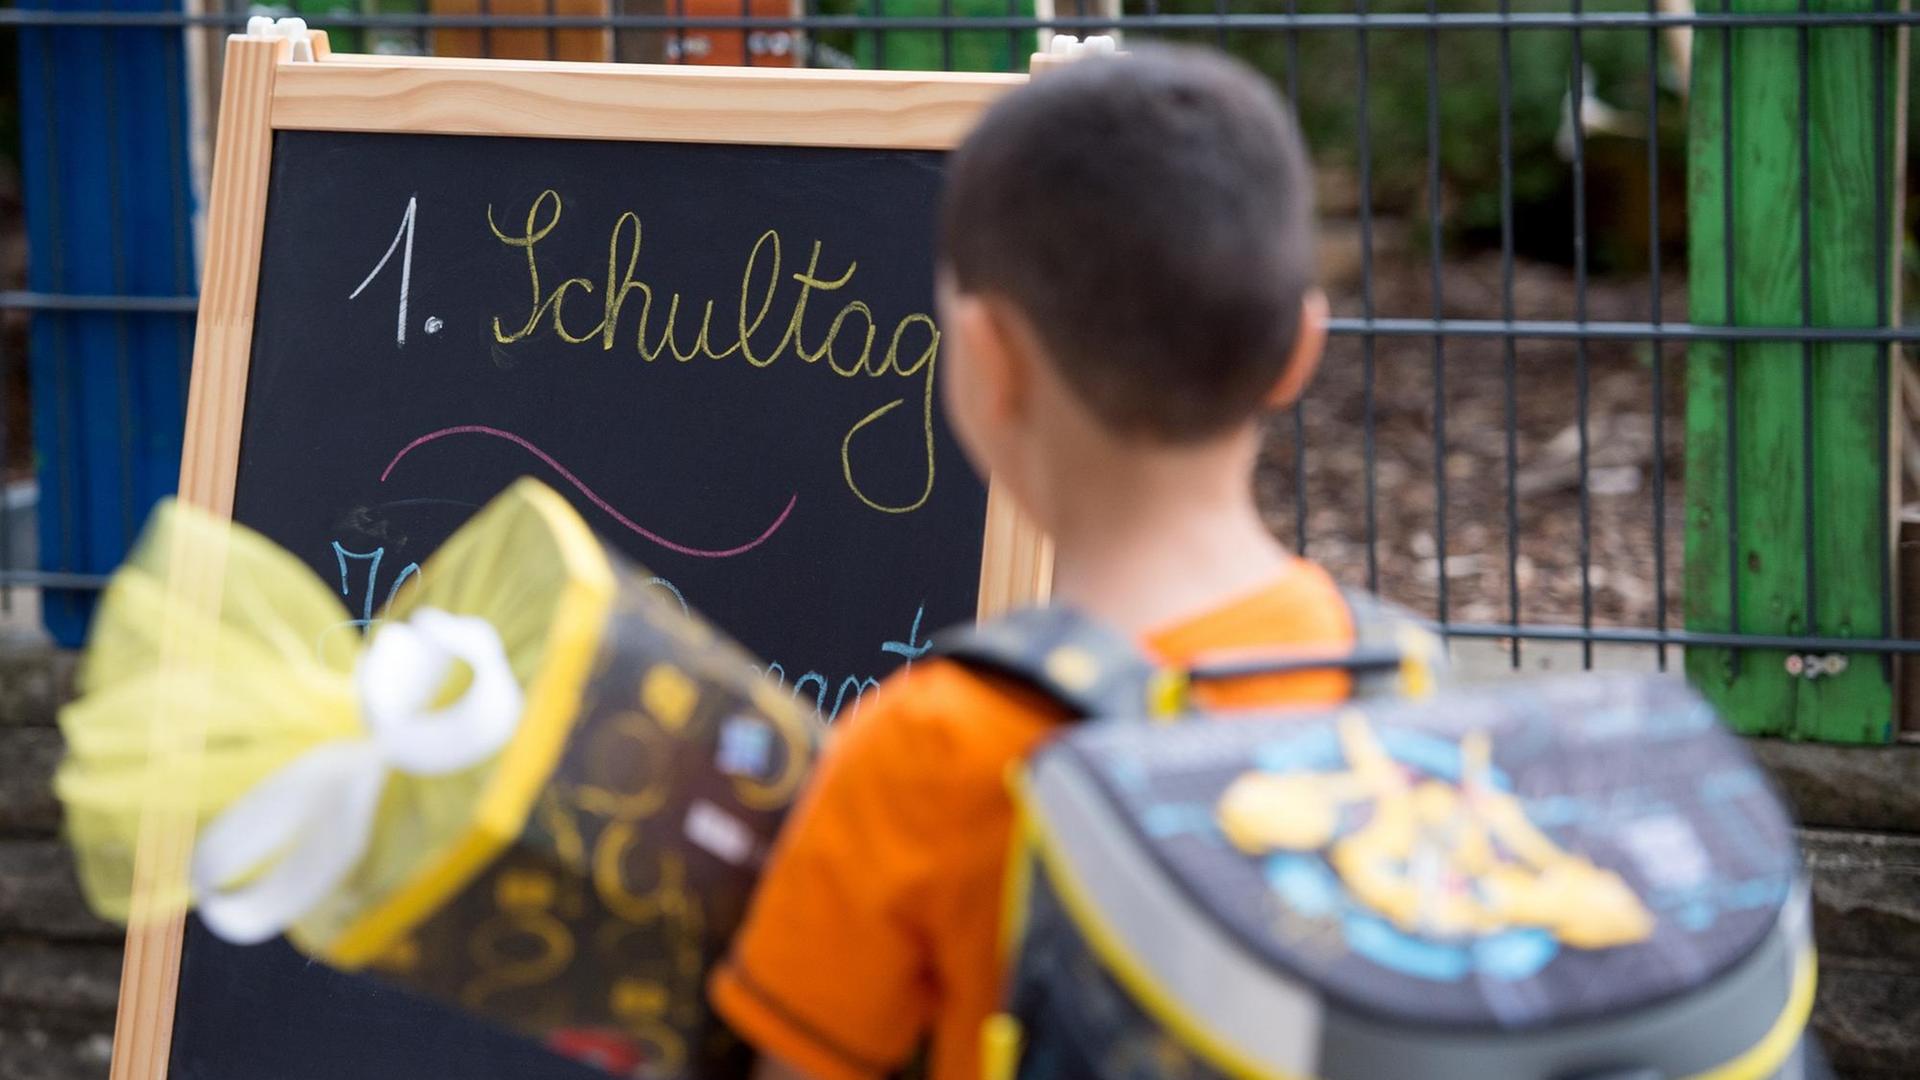 Ein Junge steht mit Schul-Tüte und Ranzen vor einer Tafel. Darauf steht: 1. Schul-Tag.